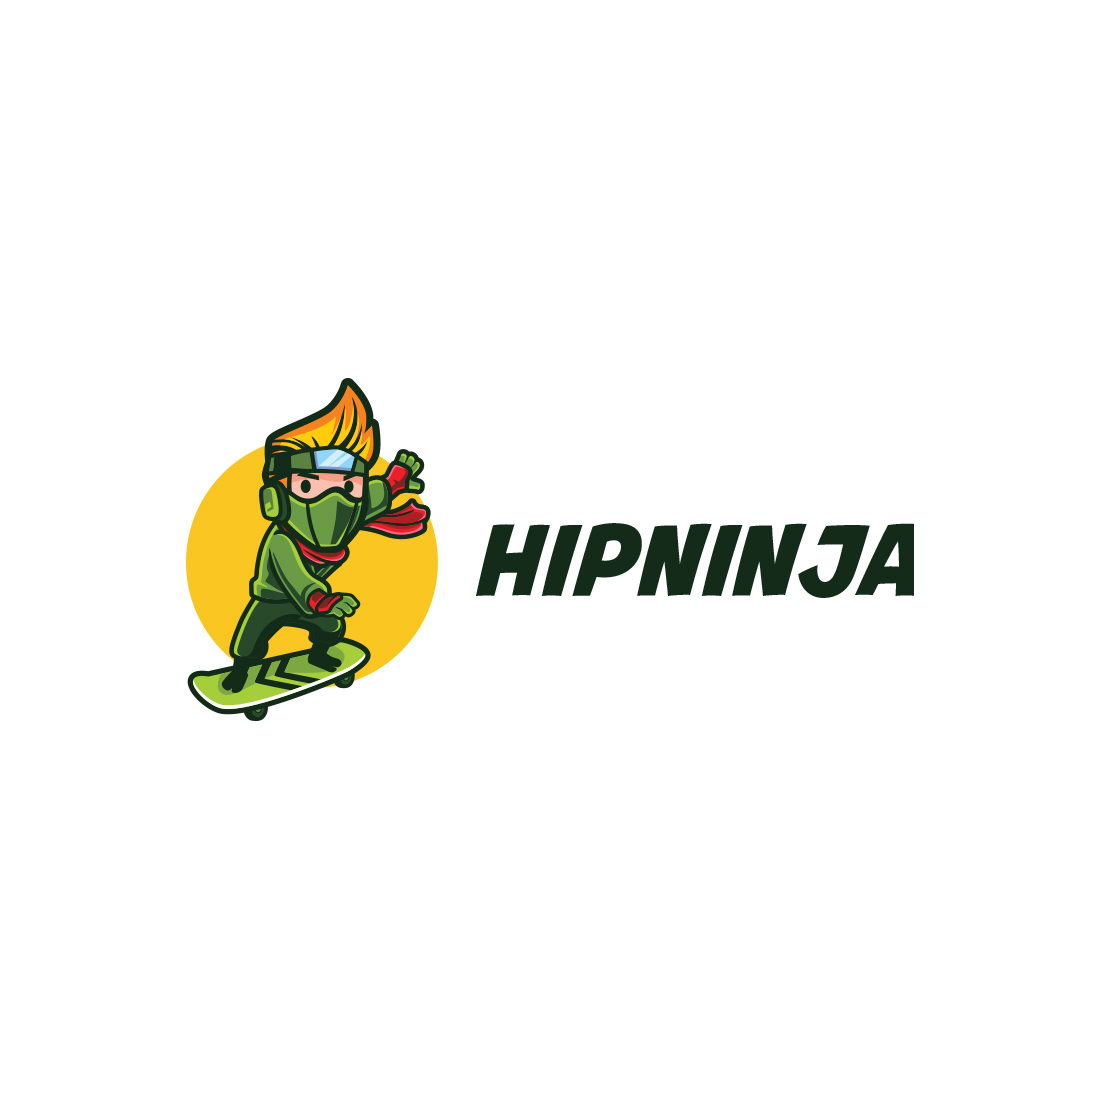 Hip Ninja Character Mascot Logo cover image.